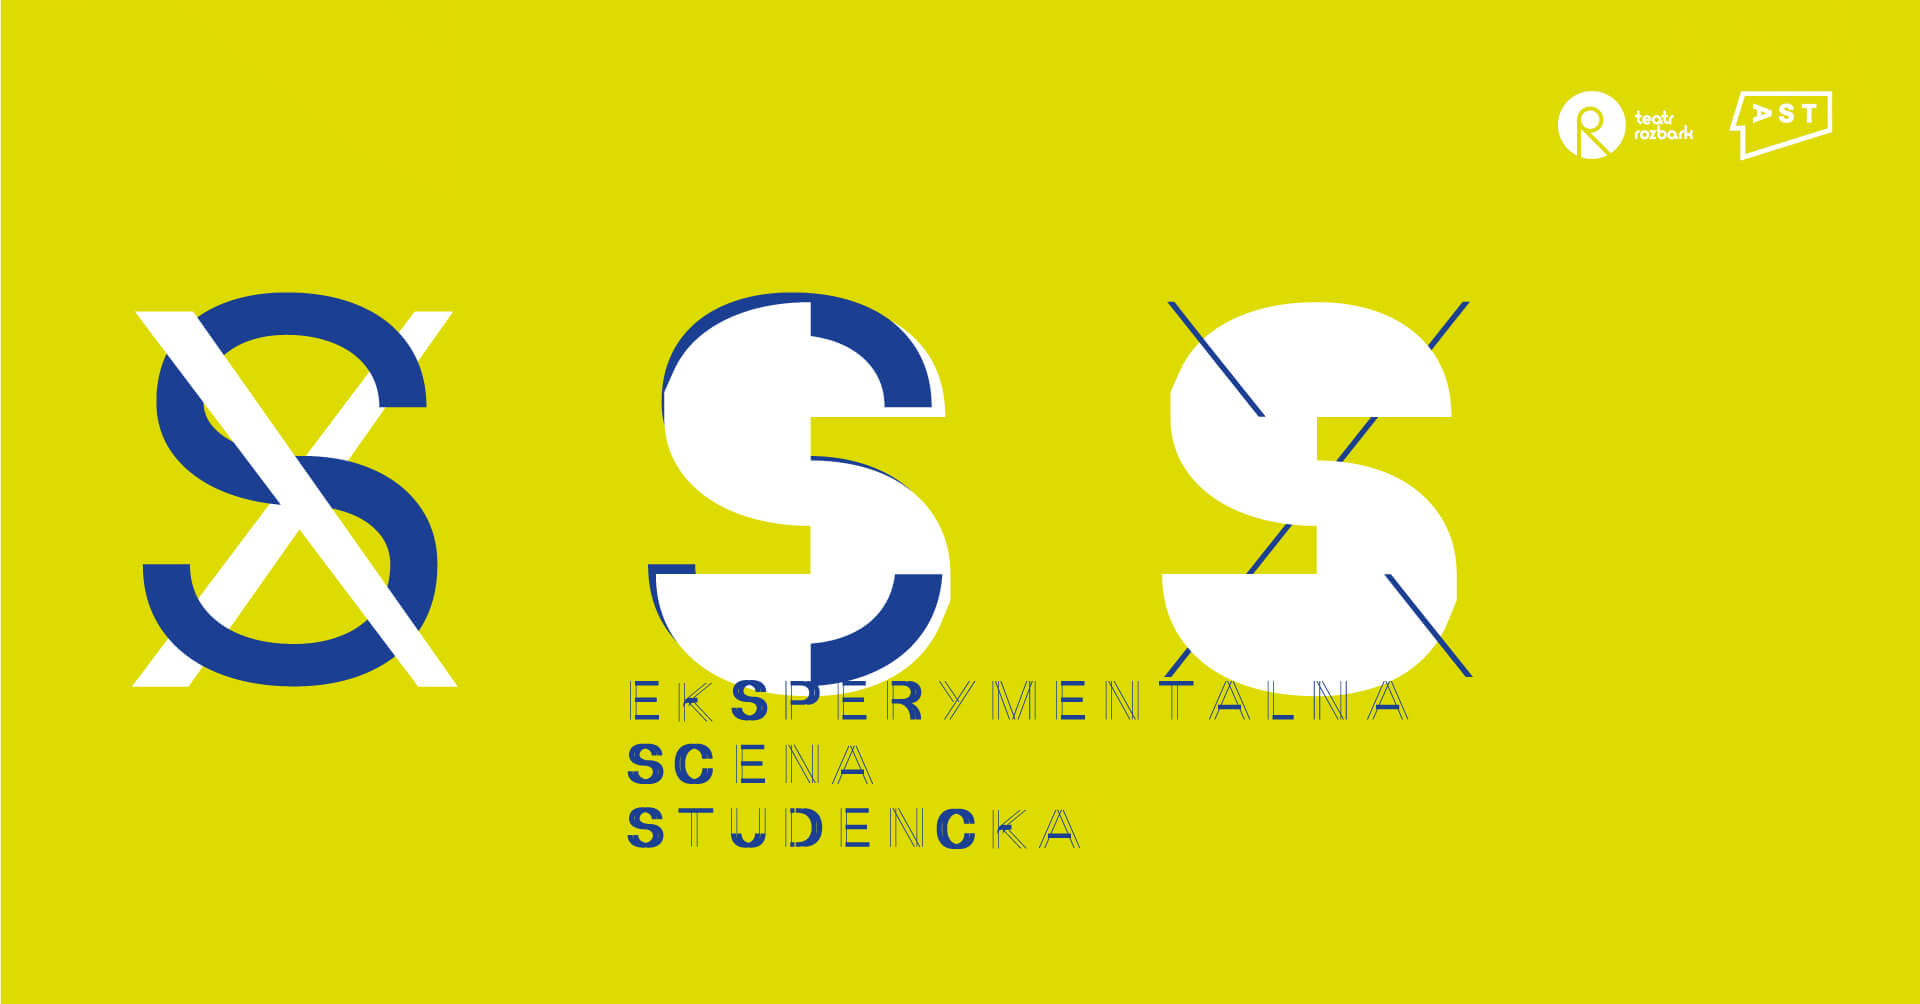 9. XSS Eksperymentalna Scena Studencka- plakat poziomy w kolorze mocnego żółtego. Przez środek plakatu zamieszczono kolejno: dużą niebieską literę S przekreśloną białym X, następnie biała litera S, na której górze i dole umieszczono niebieski kolor, następnie duża litera S w kolorze białym, przekreślona niebieskim X. Poniżej jest przenikający niebieski napis EKSPERYMENTALNA SCENA STUDENCKA. W prawym górnym rogu umieszczono białe logotypy teatru Rozbark oraz AST.